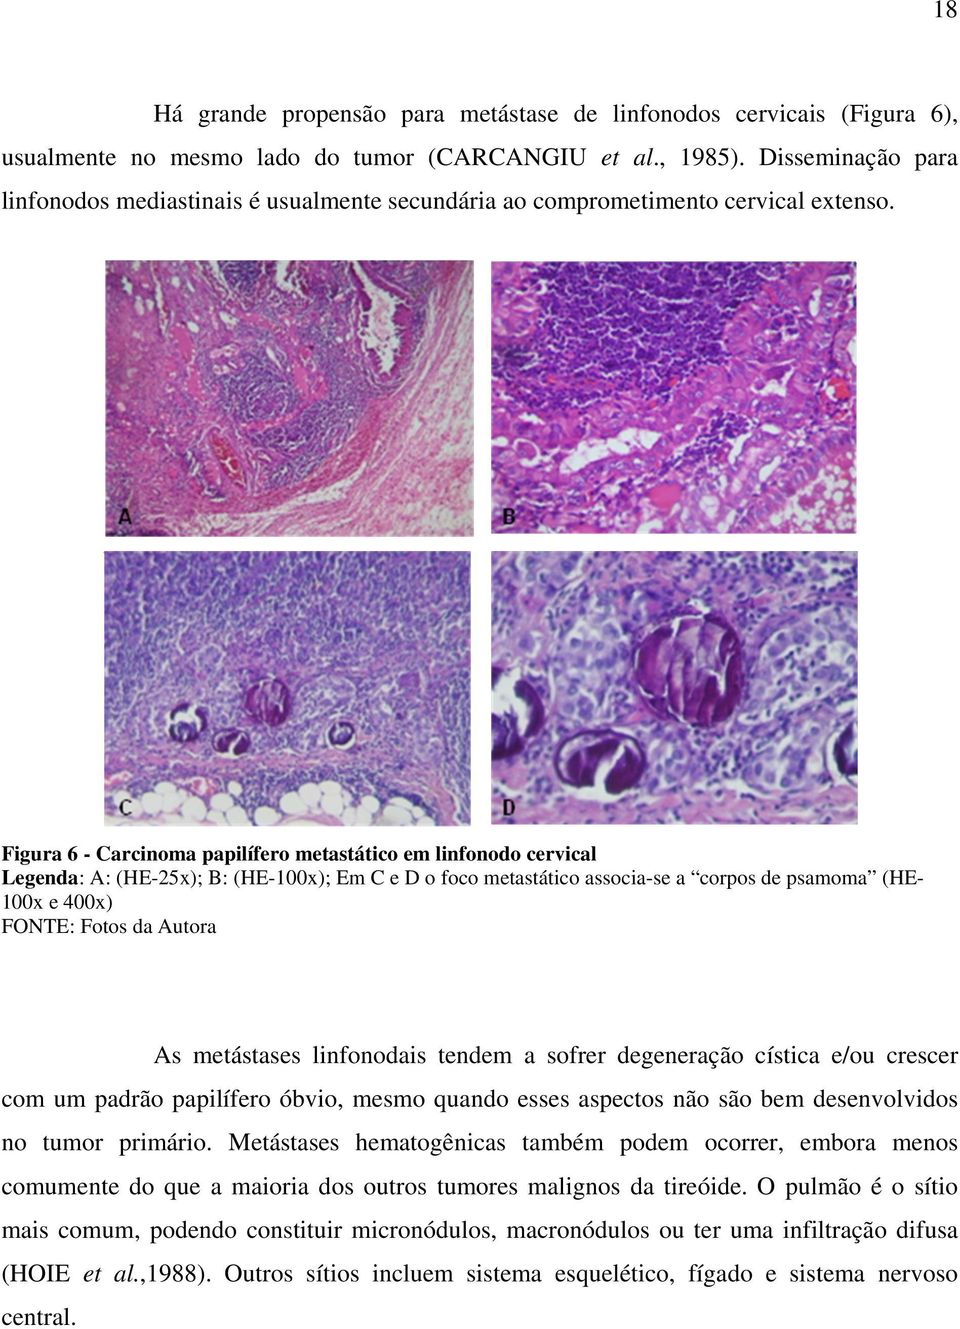 Figura 6 - Carcinoma papilífero metastático em linfonodo cervical Legenda: A: (HE-25x); B: (HE-100x); Em C e D o foco metastático associa-se a corpos de psamoma (HE100x e 400x) FONTE: Fotos da Autora